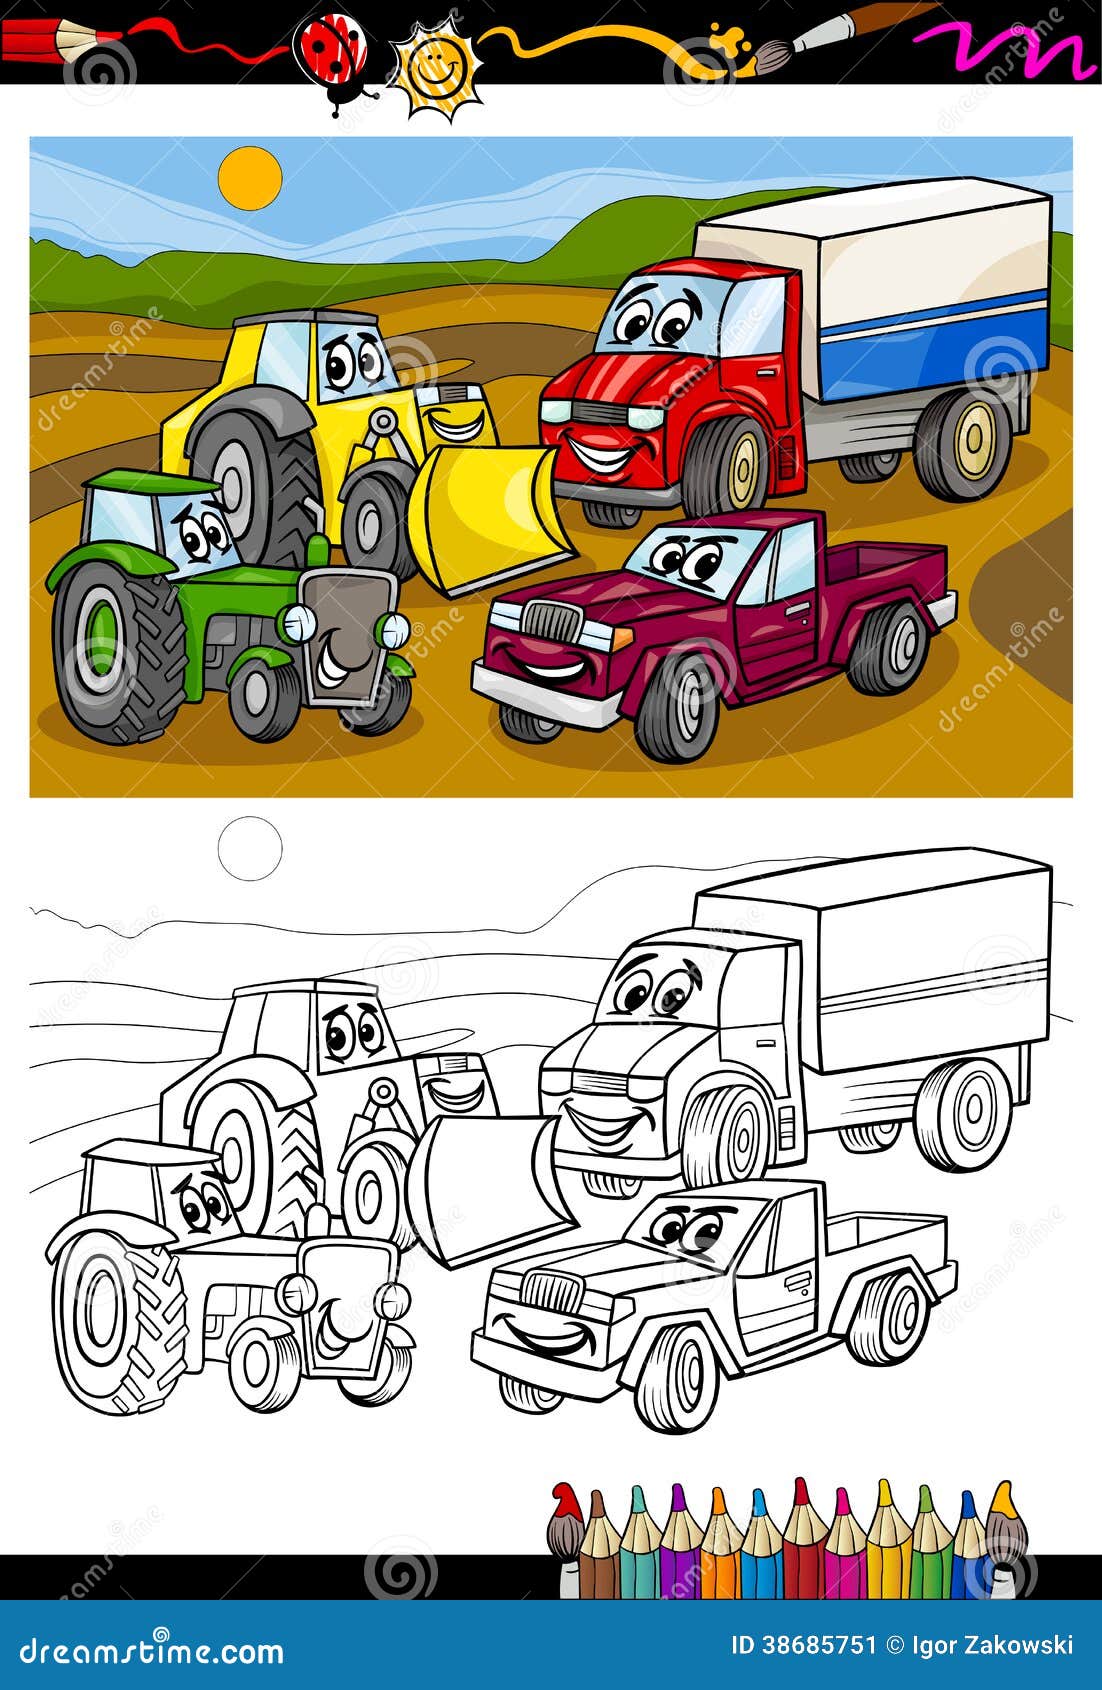 Animais Livro de colorir: 70 desenhos de animais fofos dirigindo veículos  (carros, caminhões, aviões e outros) Livro de colorir para crianças de 2 a  8 anos (Portuguese Edition): Willo, Atividade: 9798624823327: :  Books